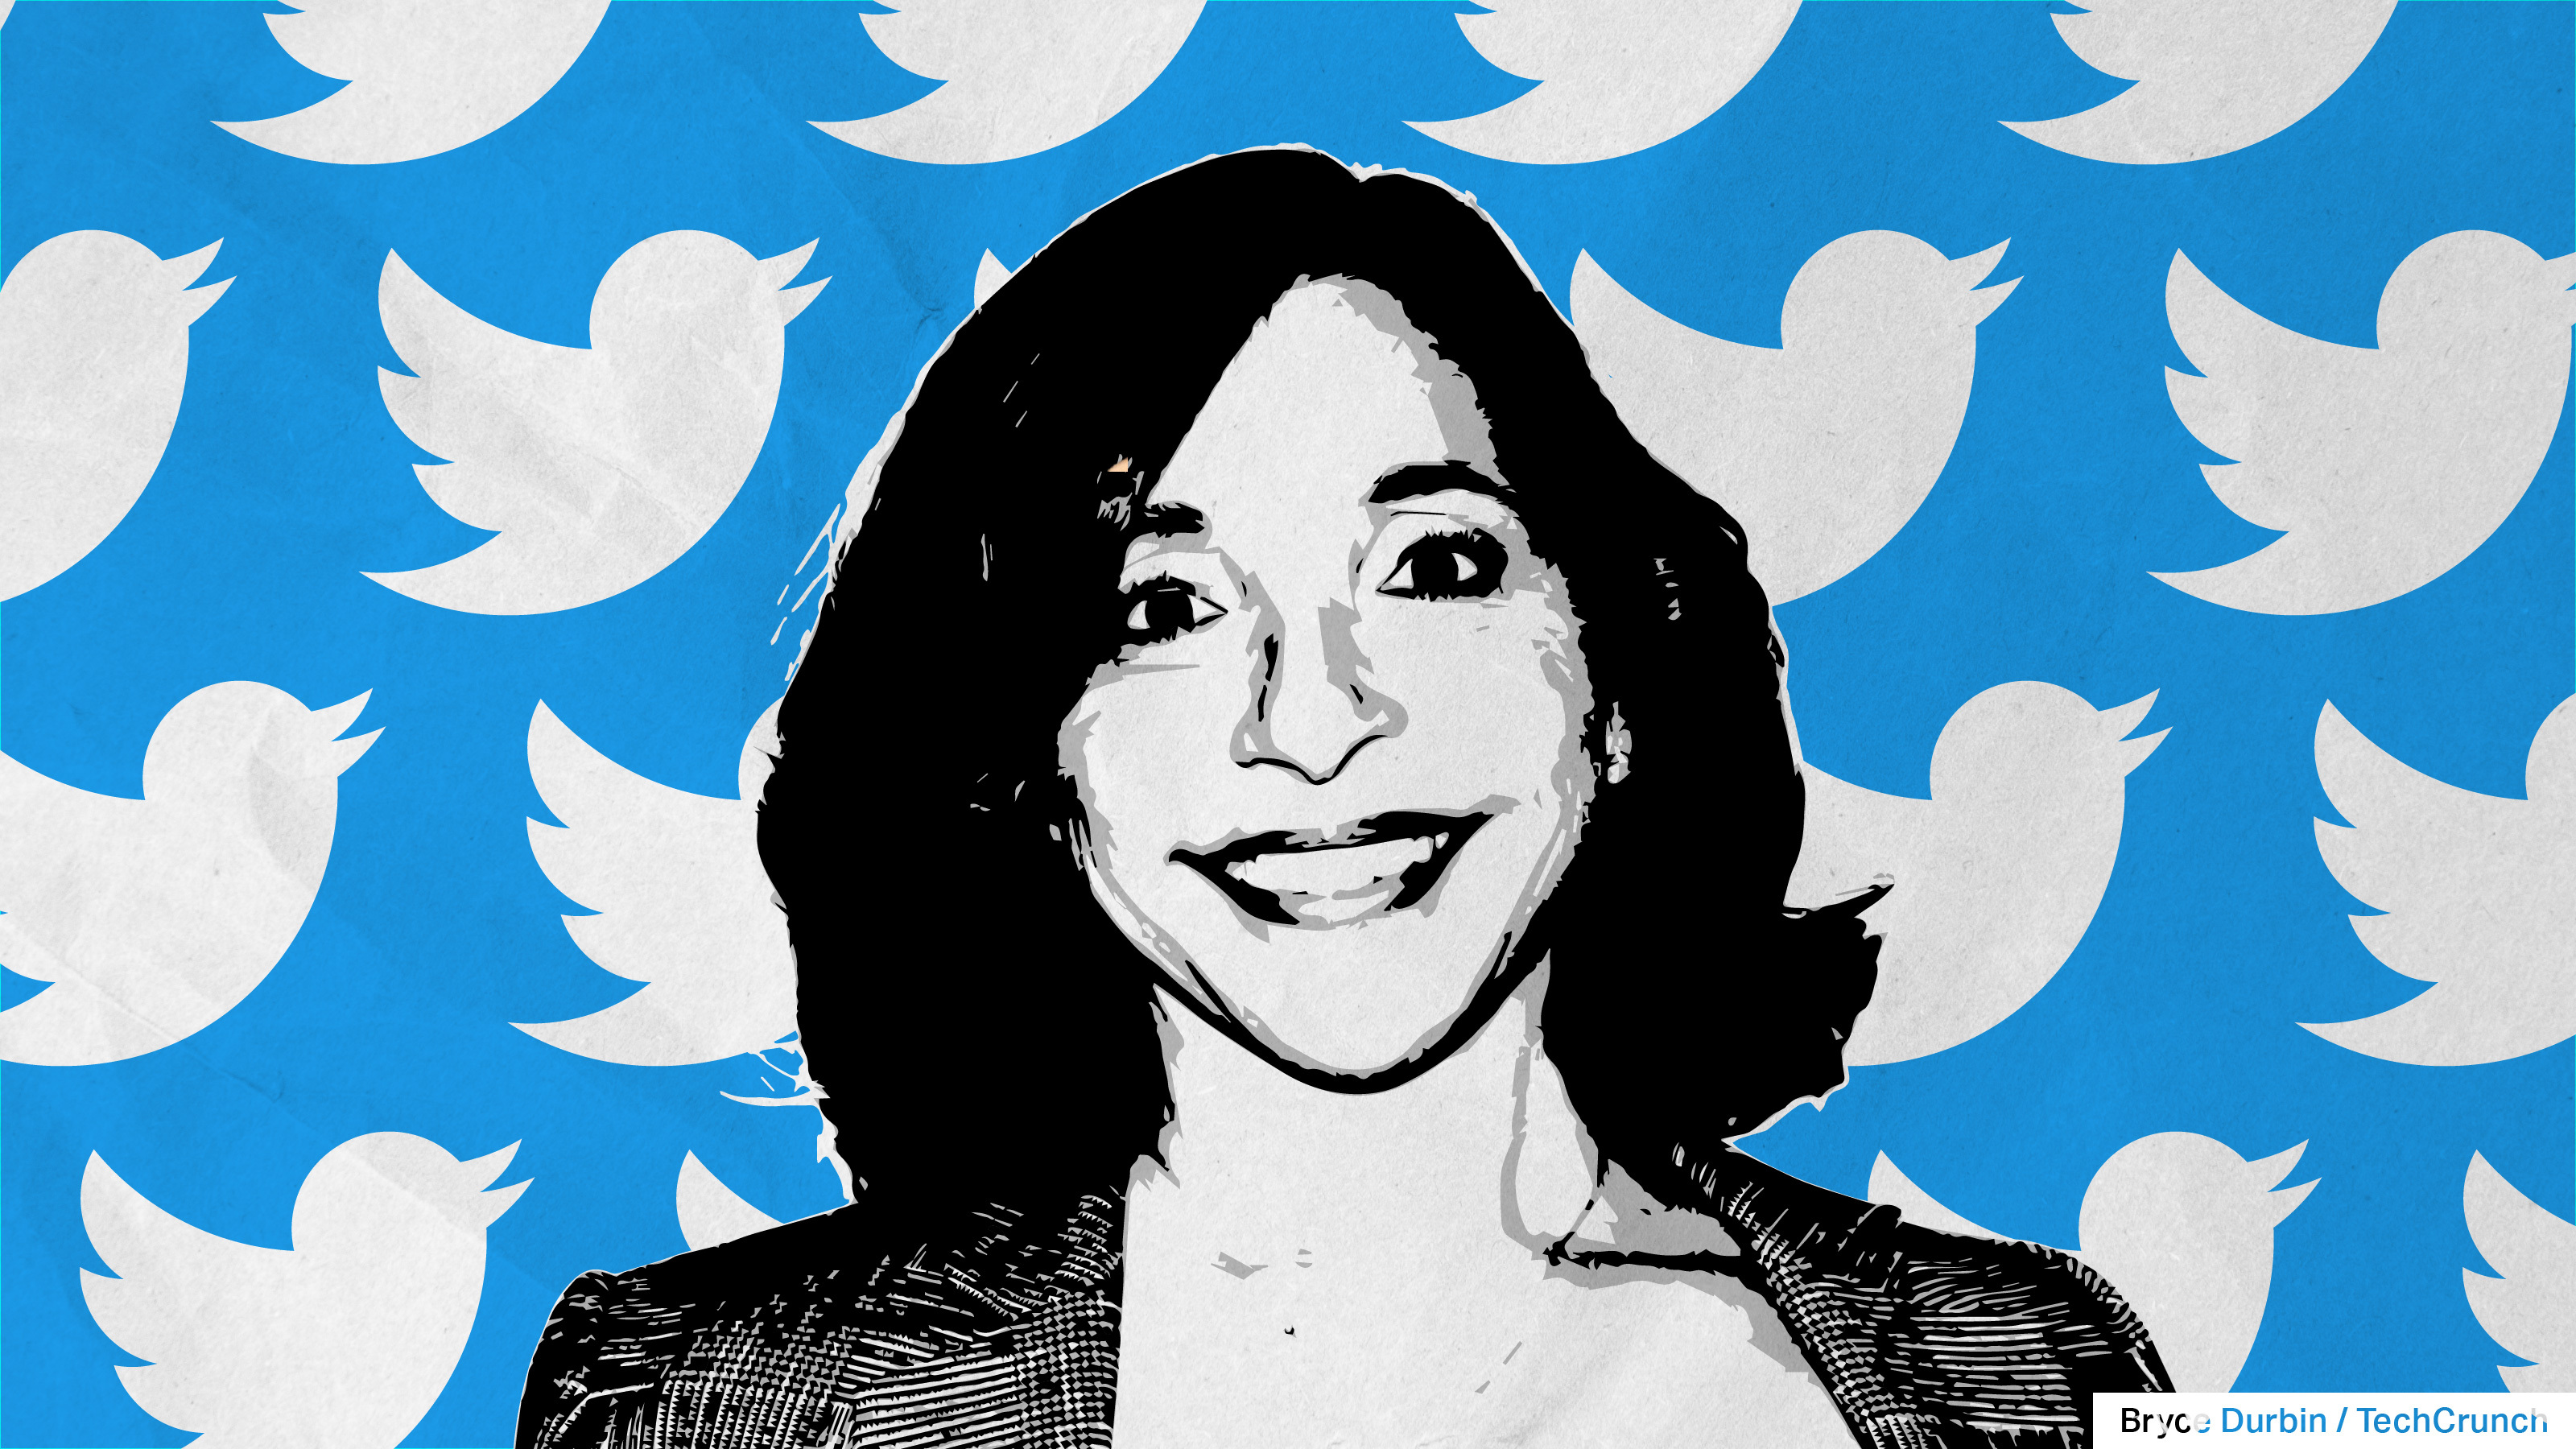 Imagen de Linda Yaccarino con pájaros de Twitter de fondo, representando al nuevo CEO de Twitter